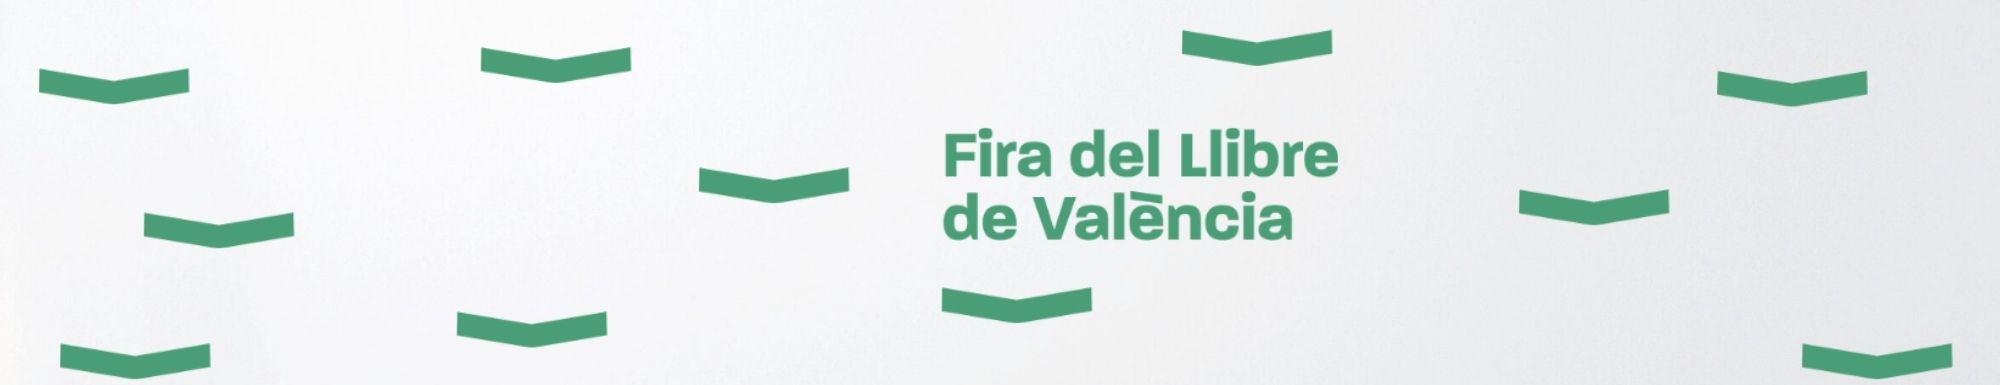 Fira del Llibre de València 2021 Bromera